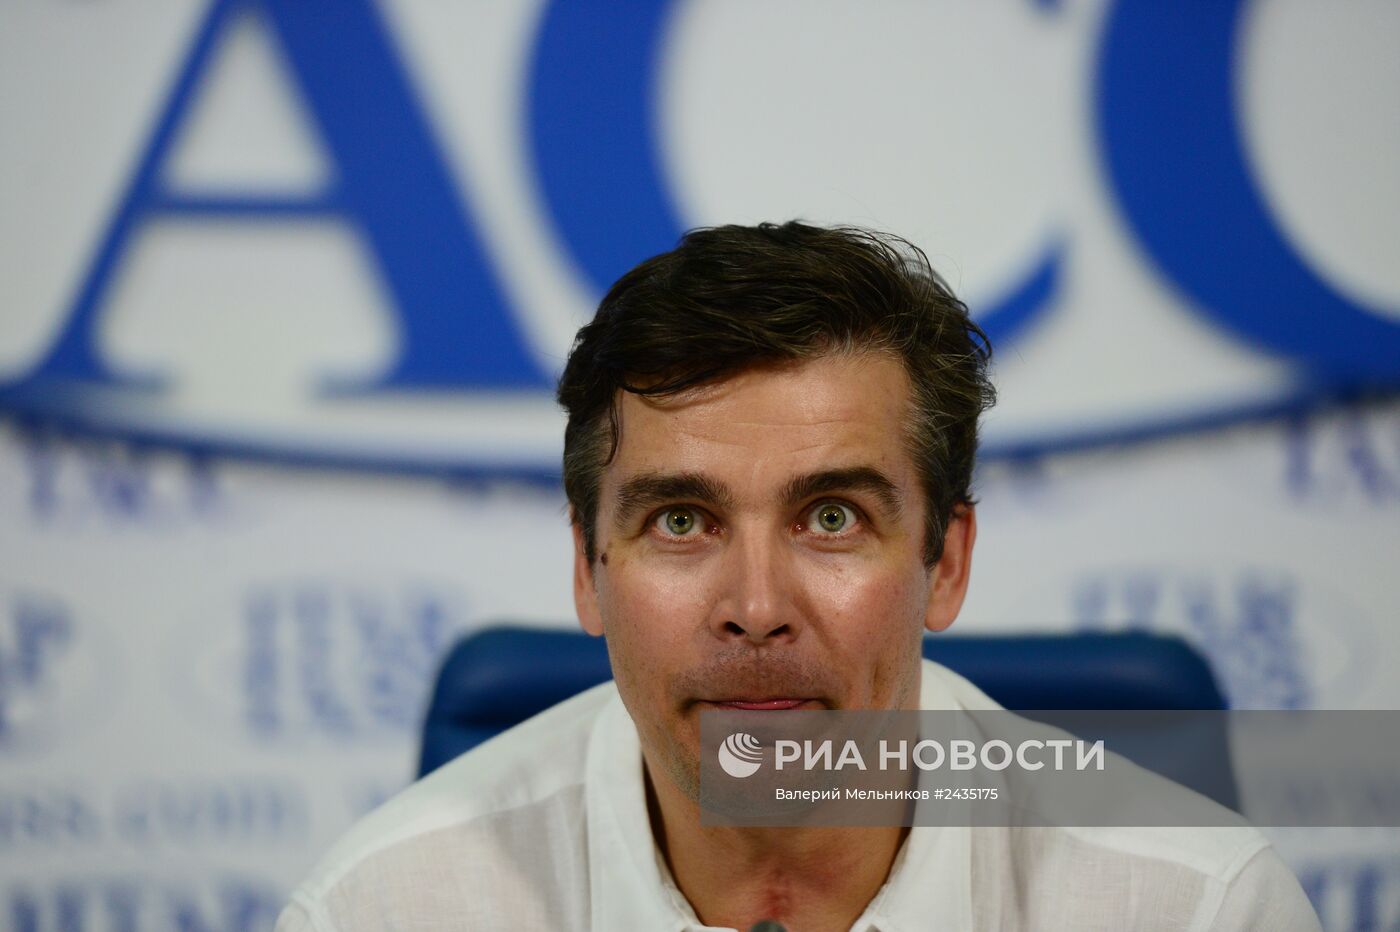 Пресс-конференция Альберта Демченко, посвященная завершению спортивной карьеры